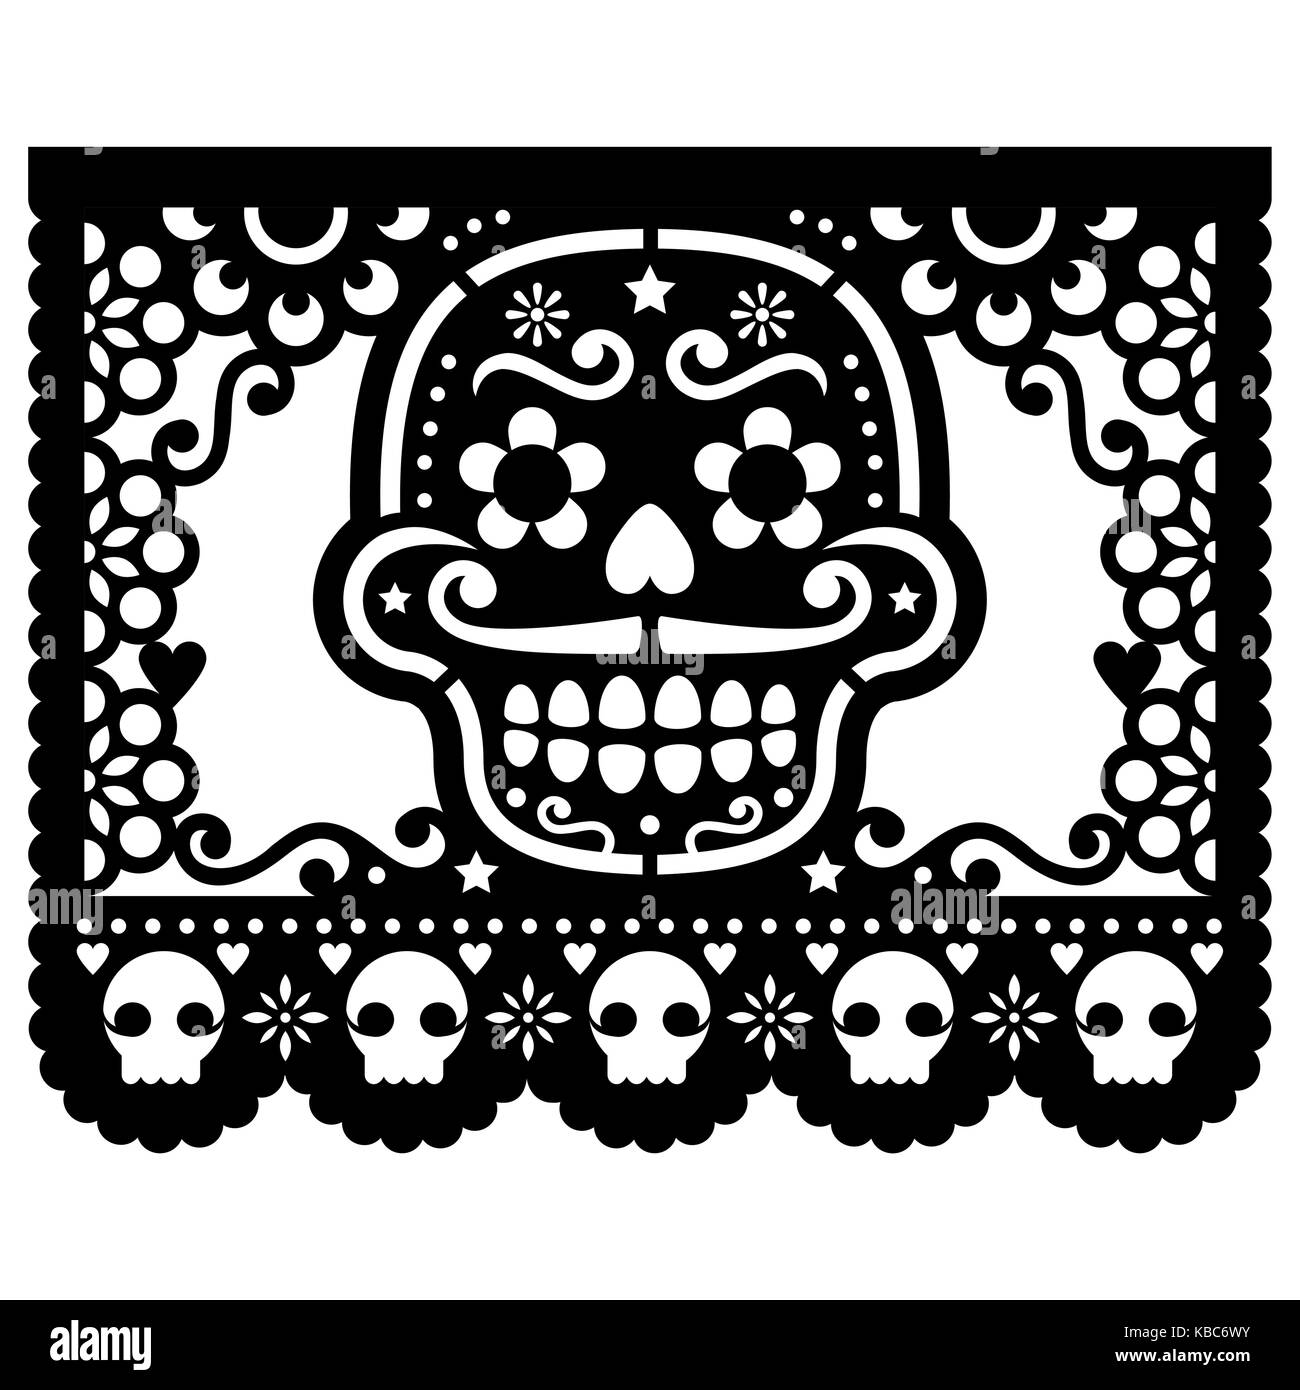 Mexikanische Sugar Skull Vektor papierdeko - Papel Picado Design in Schwarz für Halloween, Dia de Los Muertos, Tag der Toten Stock Vektor